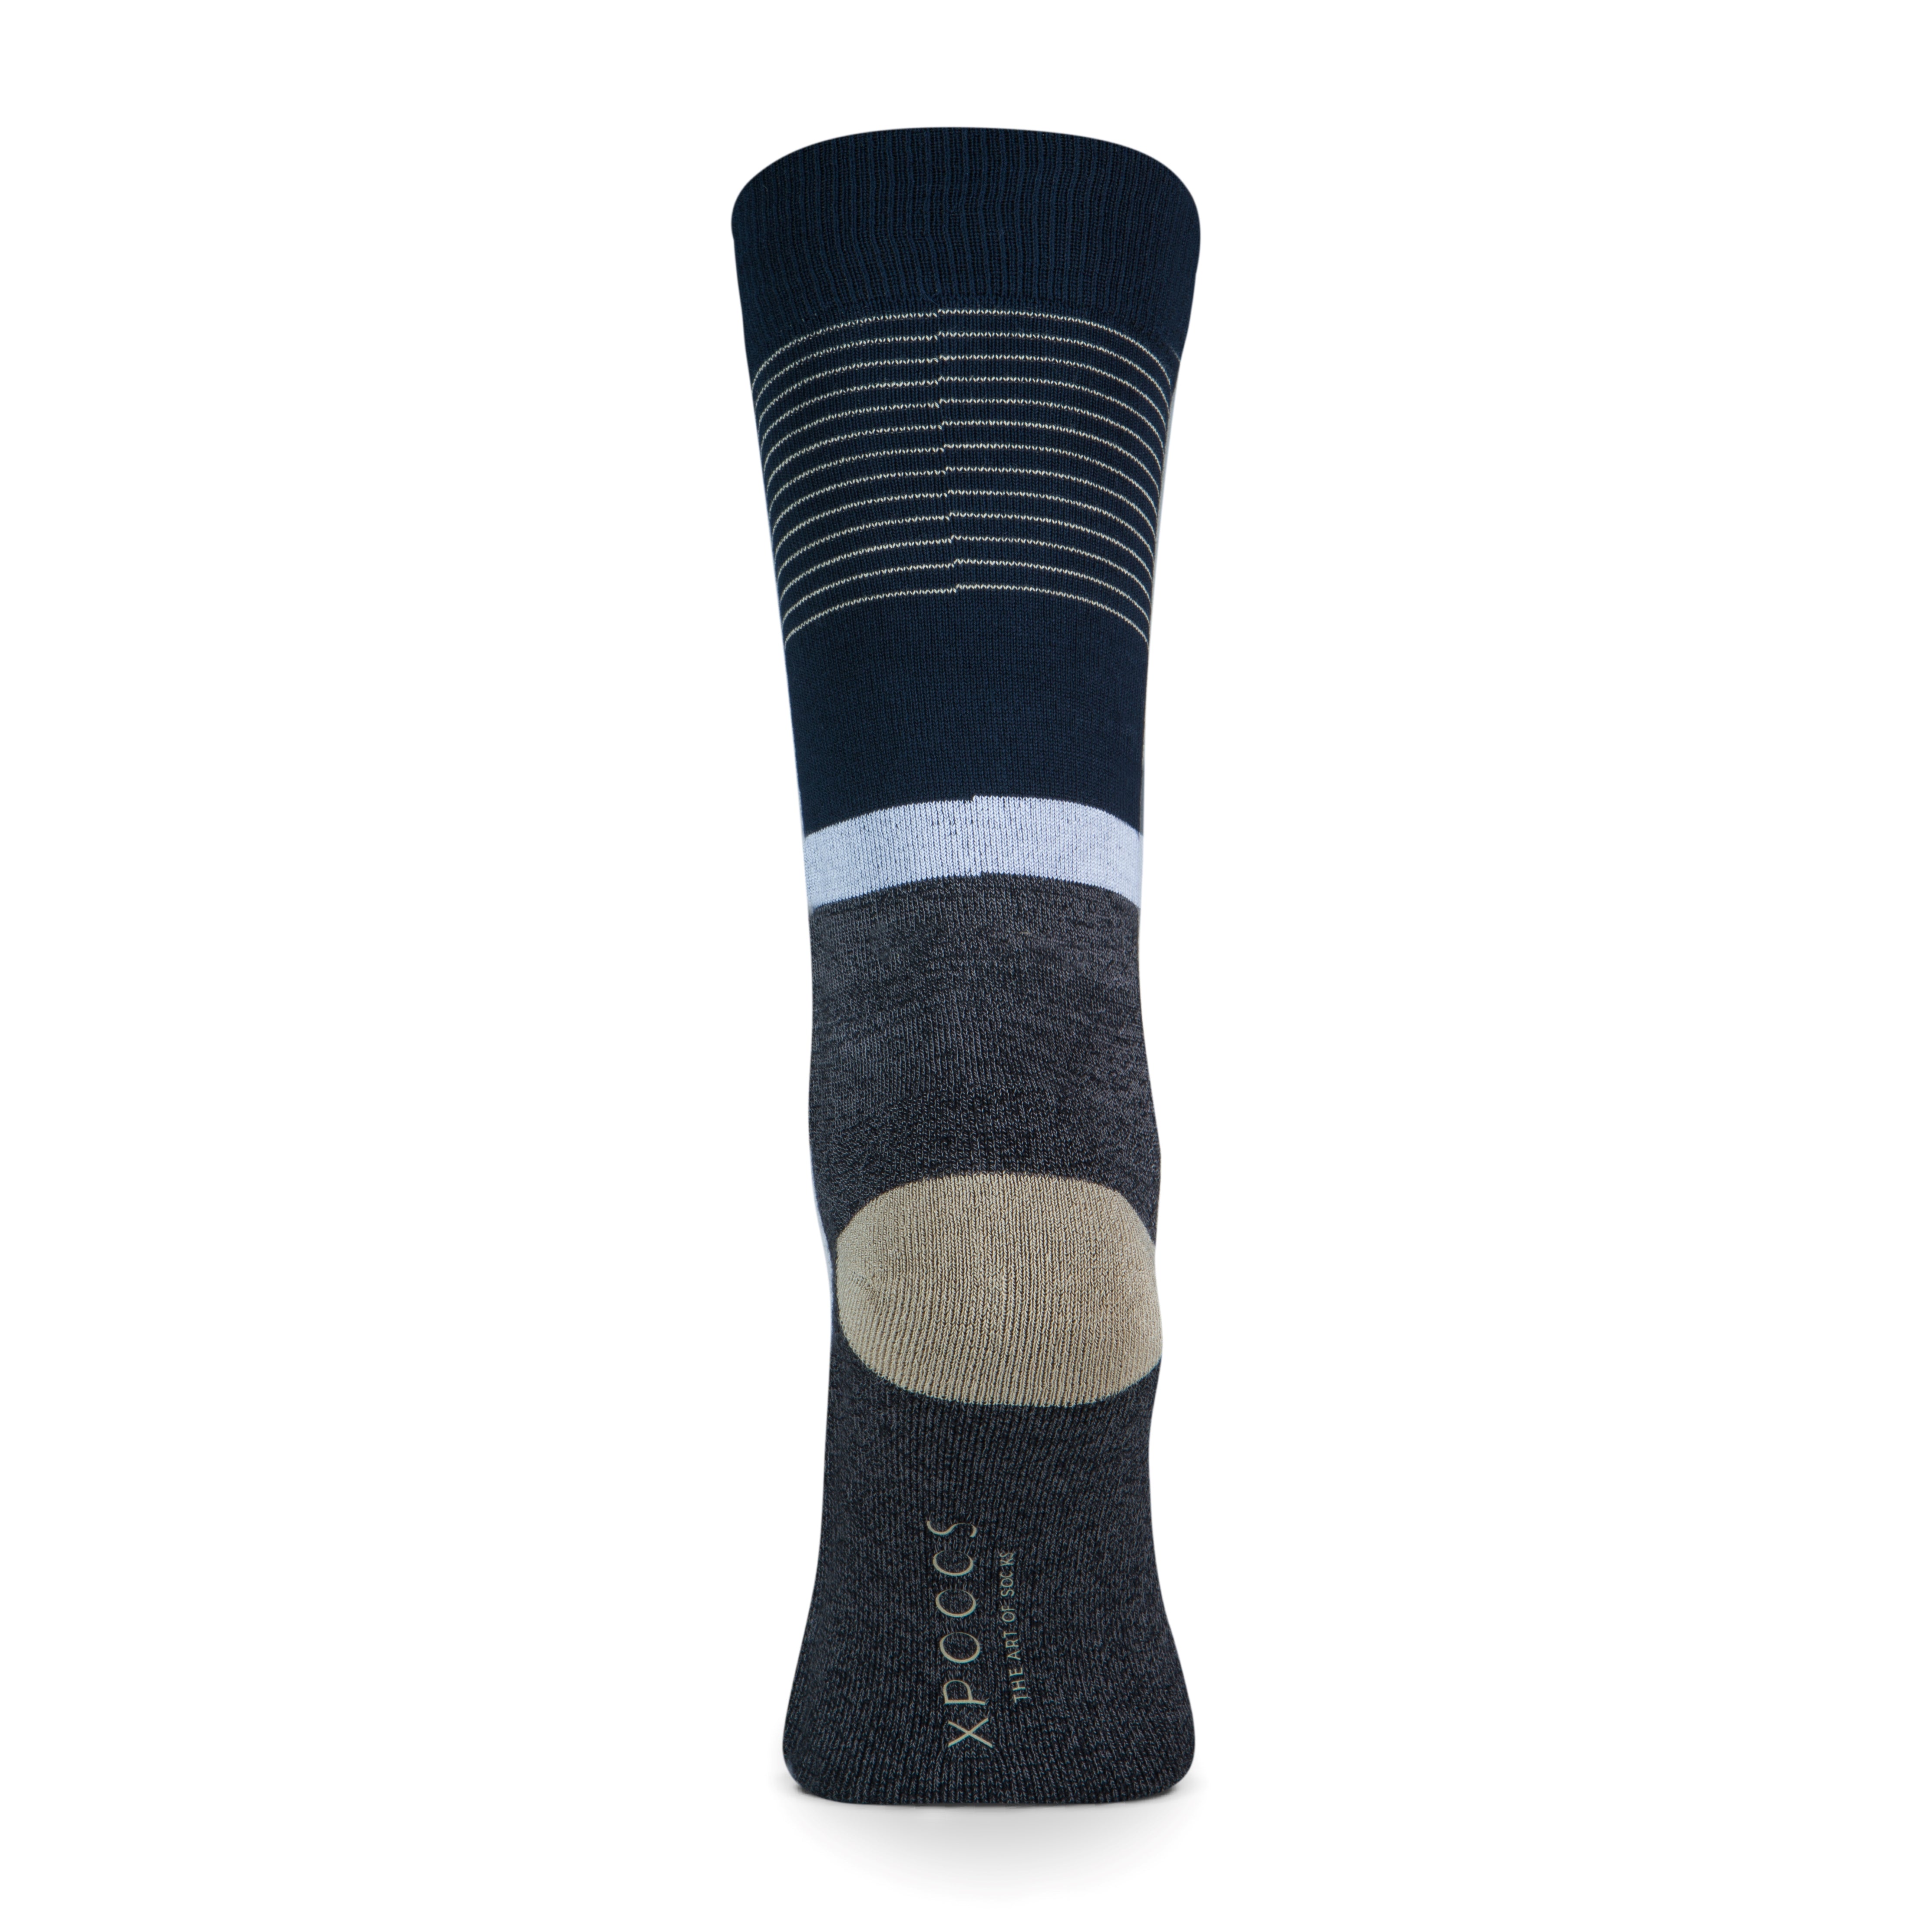 Hong Kong Men's Socks Anthracite